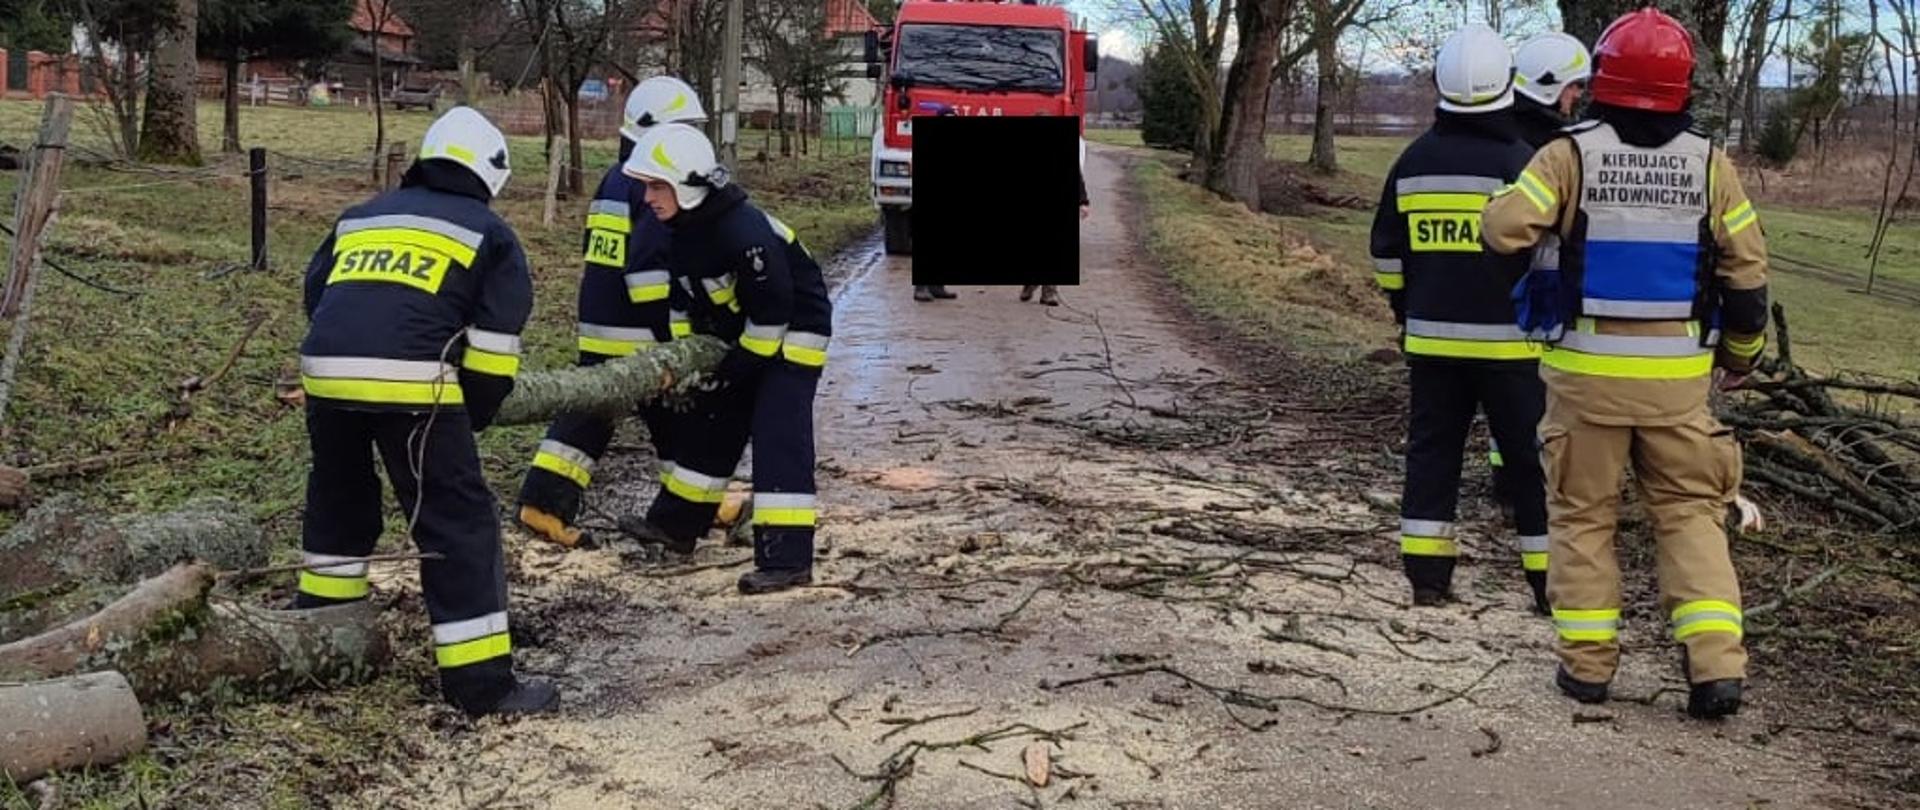 6 strażaków usuwa z drogi połamane konary drzewa. Za nimi stoi samochód gaśniczy a w oddali widać zabudowania. 